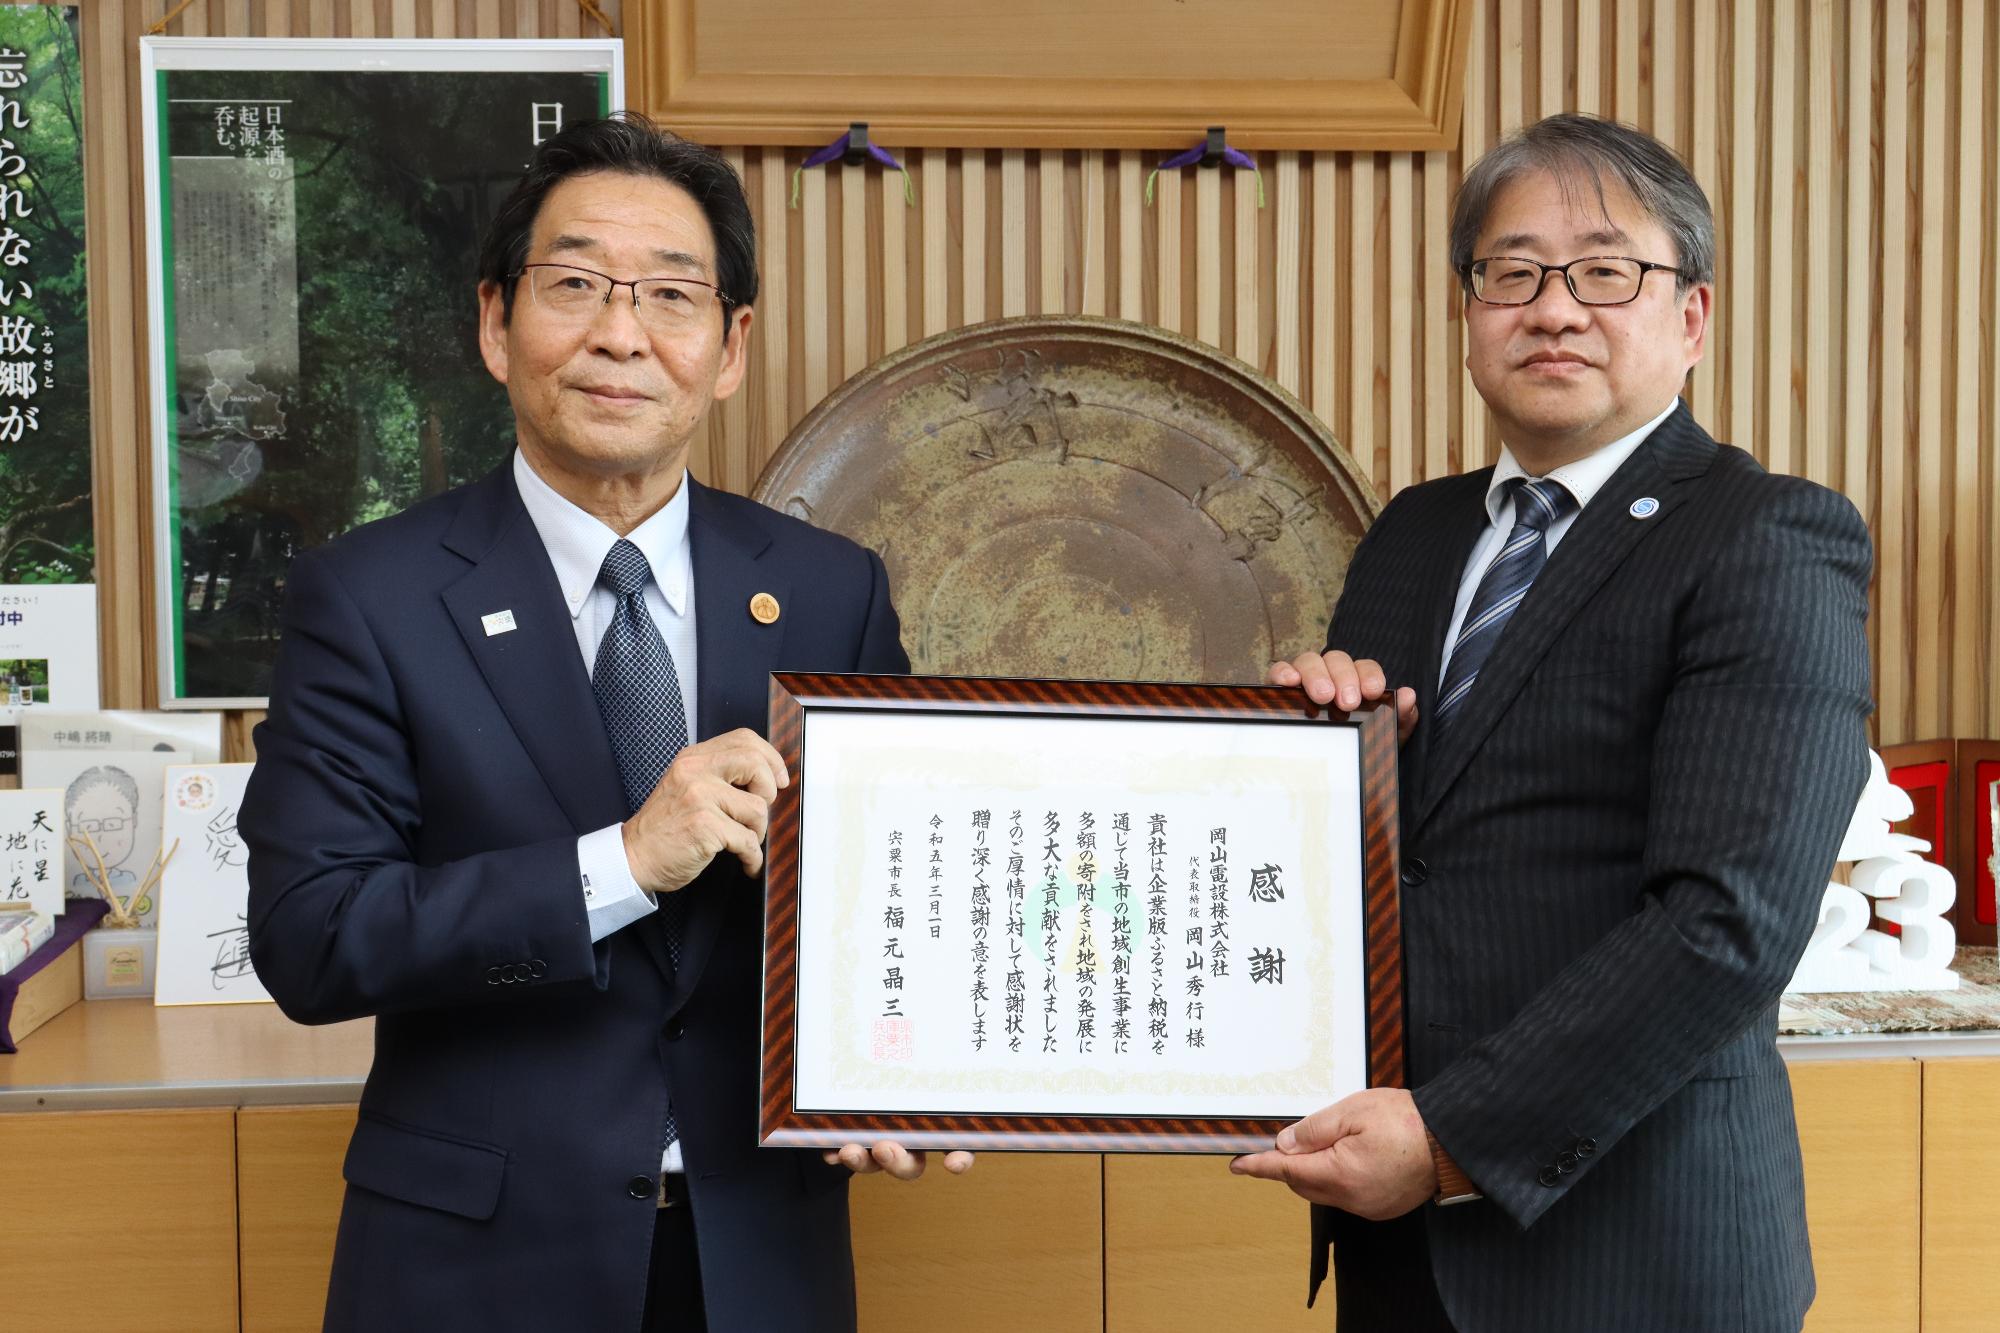 感謝状を手にした岡山電設株式会社代表取締役の岡山秀行様と福元市長の写真